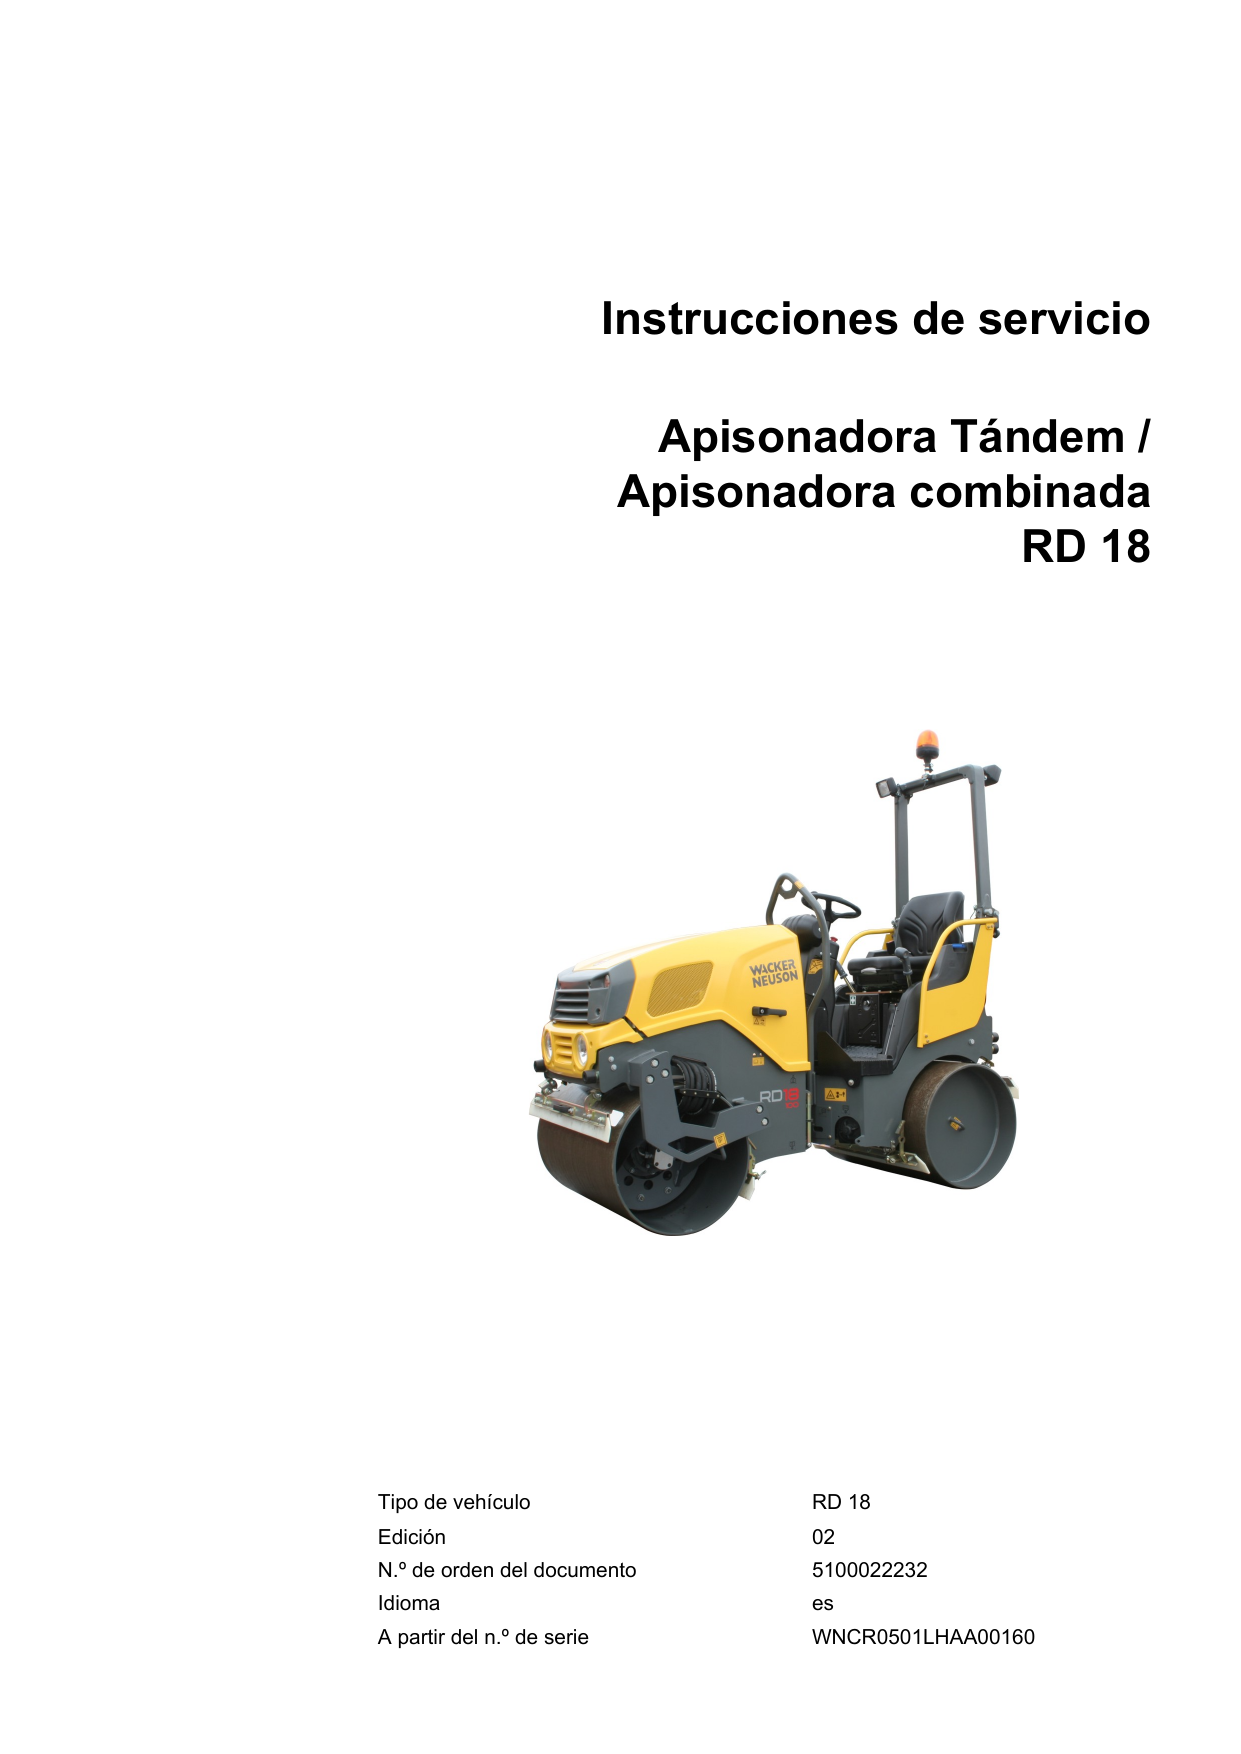 Tractor Remolque Pin 7/8" X 6" con Pasador con anillo abatible & Cadena 